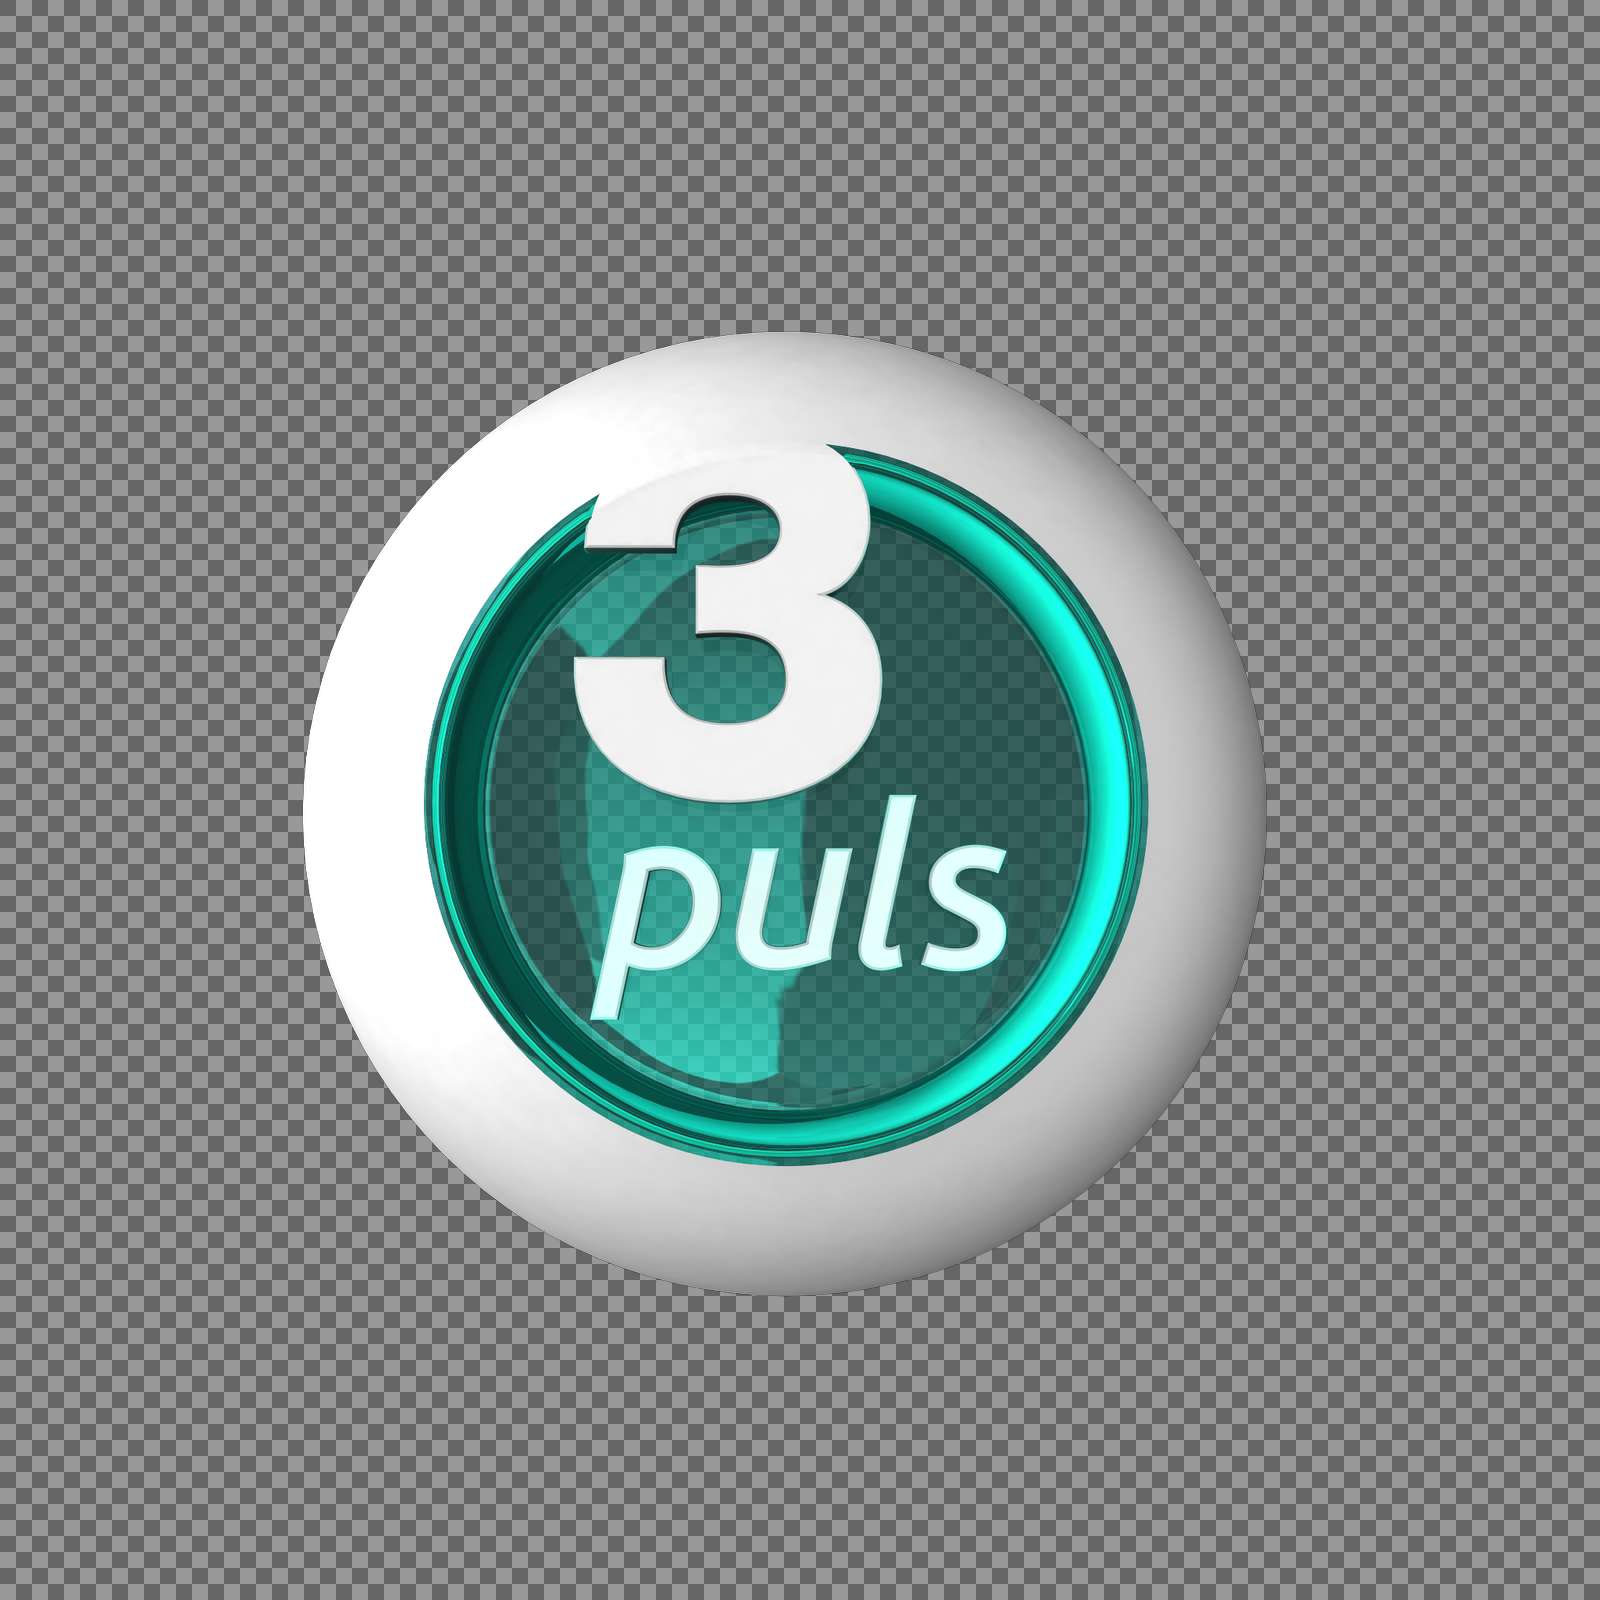 Puls logo 2k